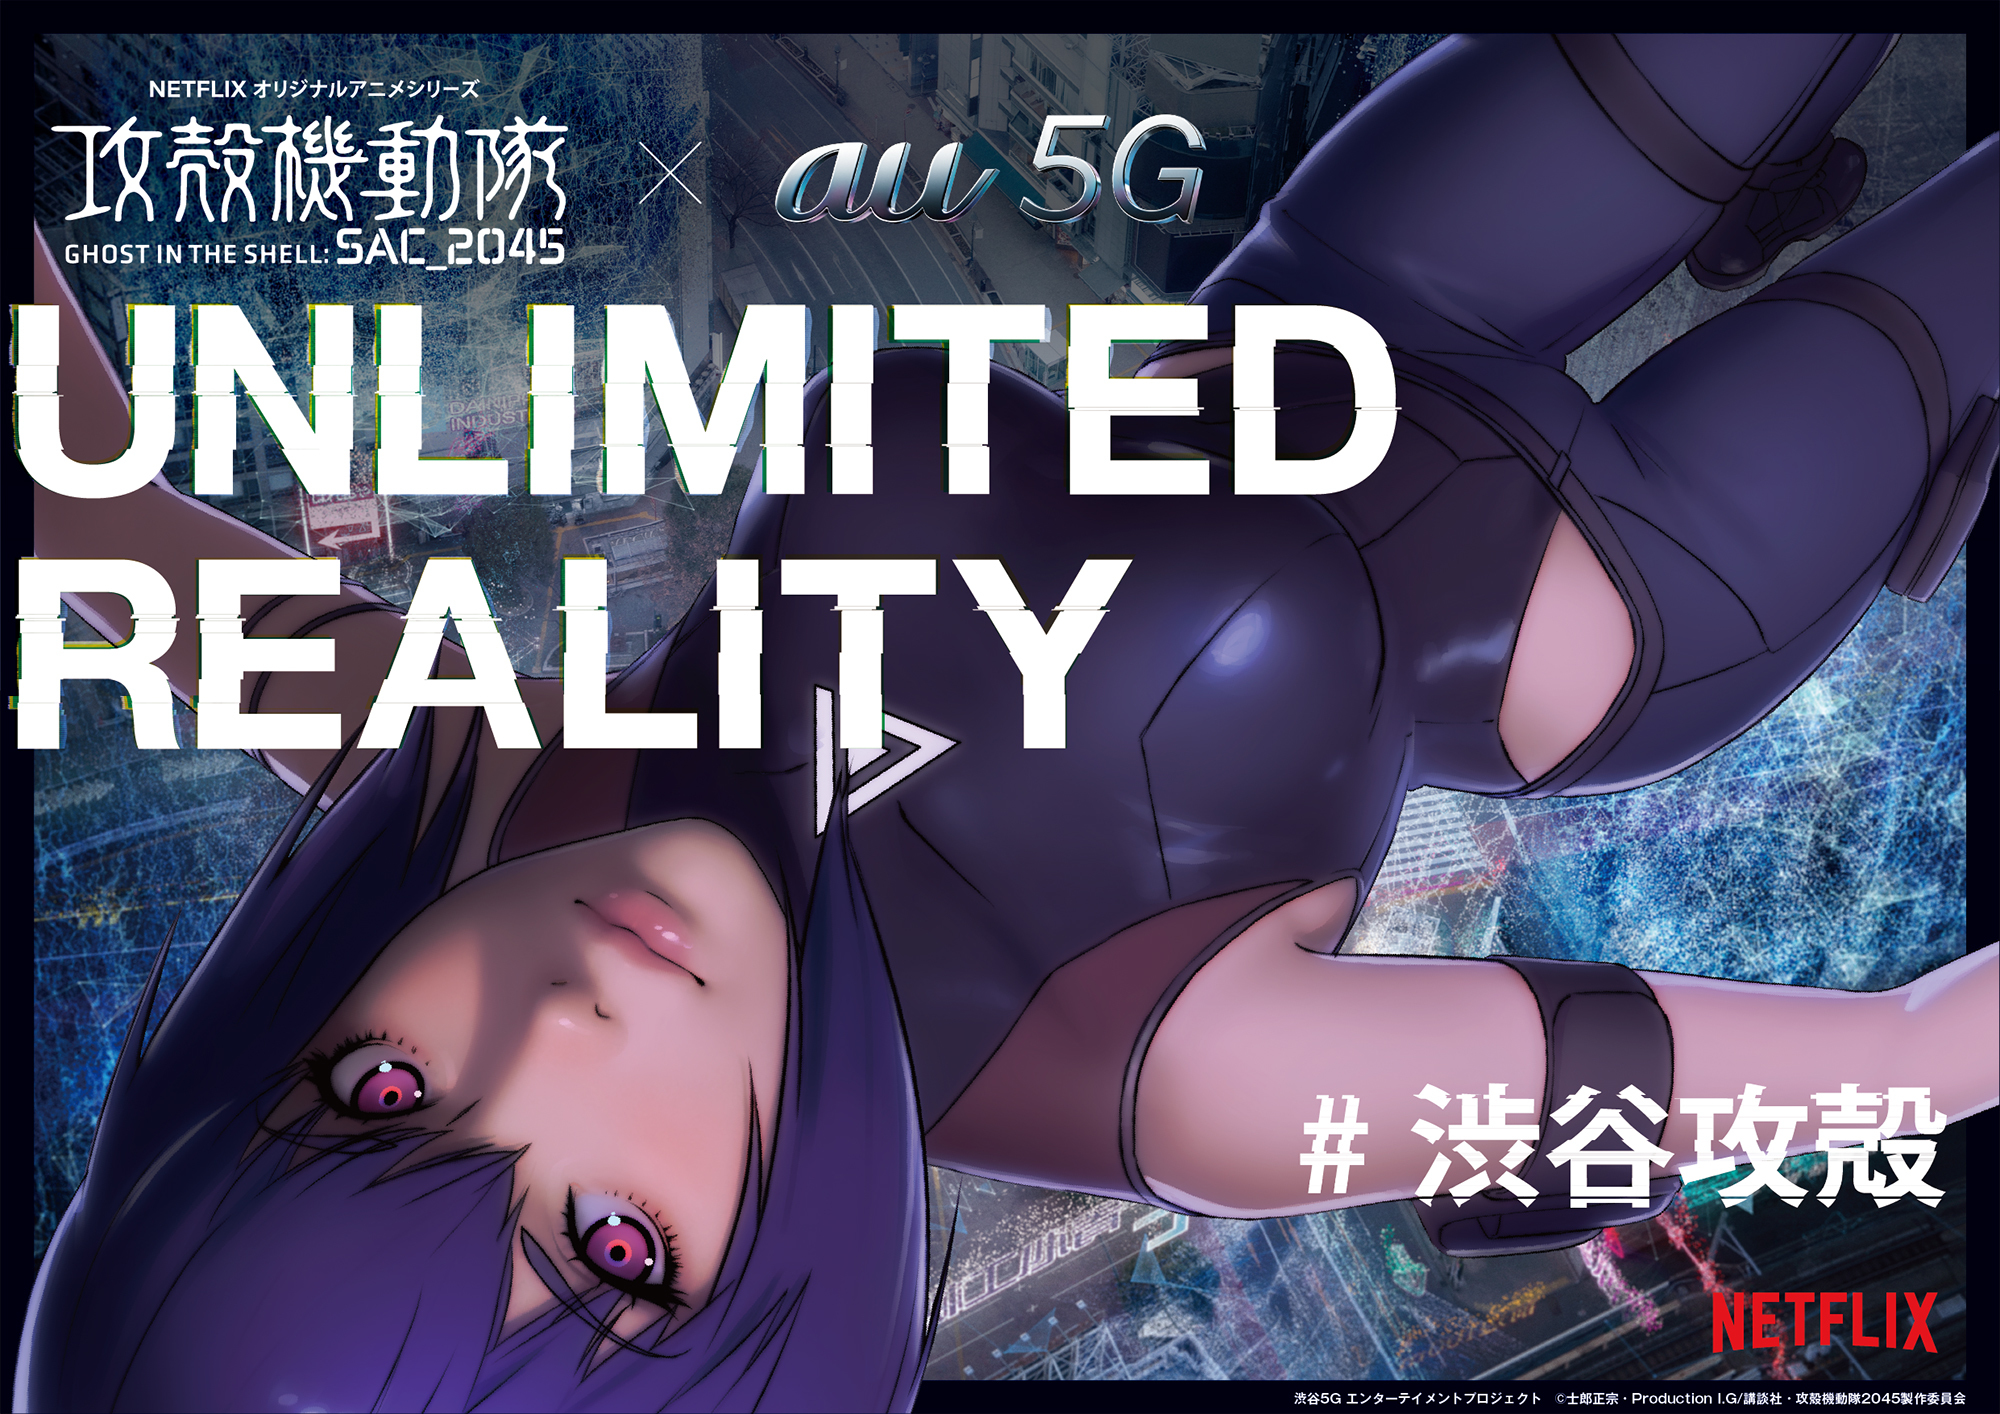 Au 5g 攻殻機動隊 Sac 45 が生み出す拡張体験 Unlimited Reality が自宅で楽しめるコンテンツを提供 Spice エンタメ特化型情報メディア スパイス